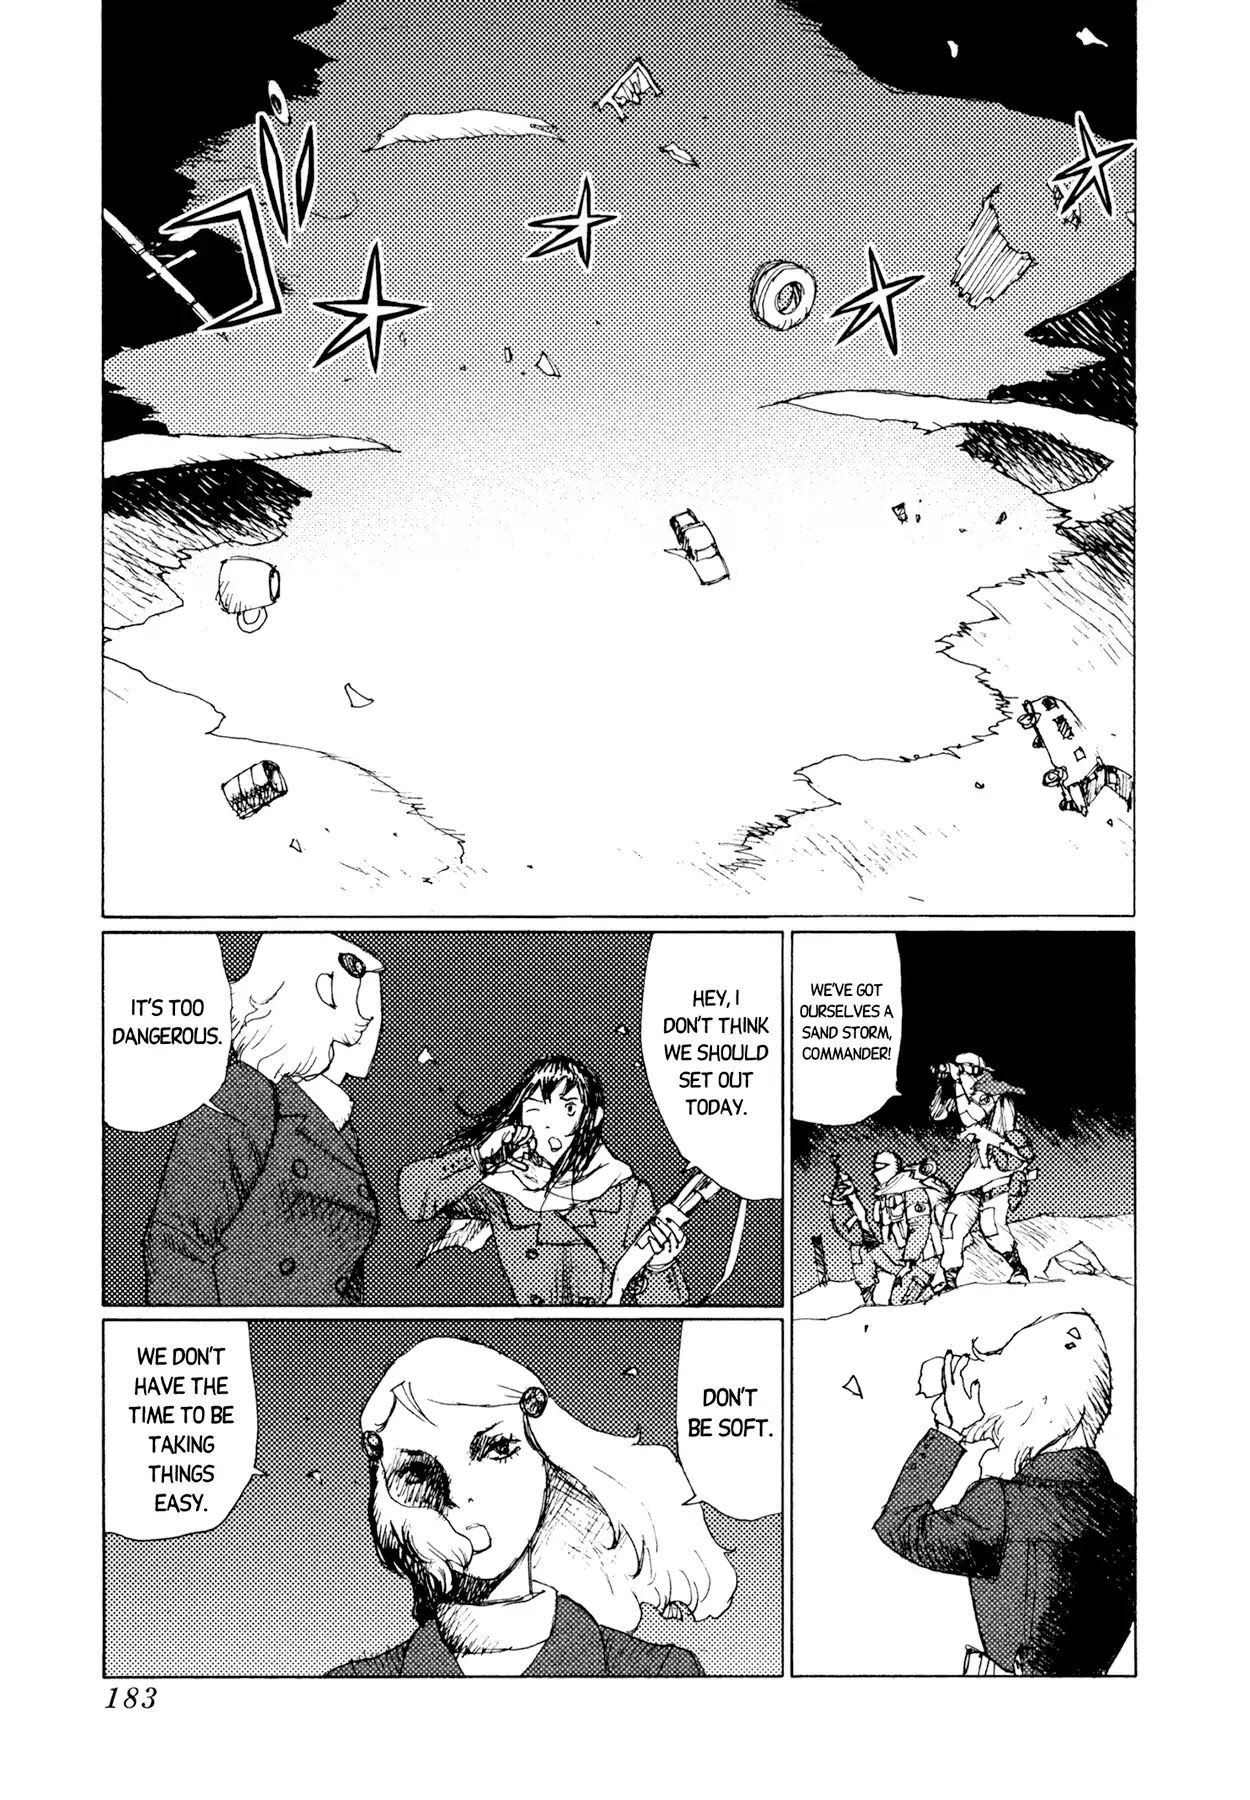 Jigoku no Alice Chapter 43: Damn Idiots! [END]